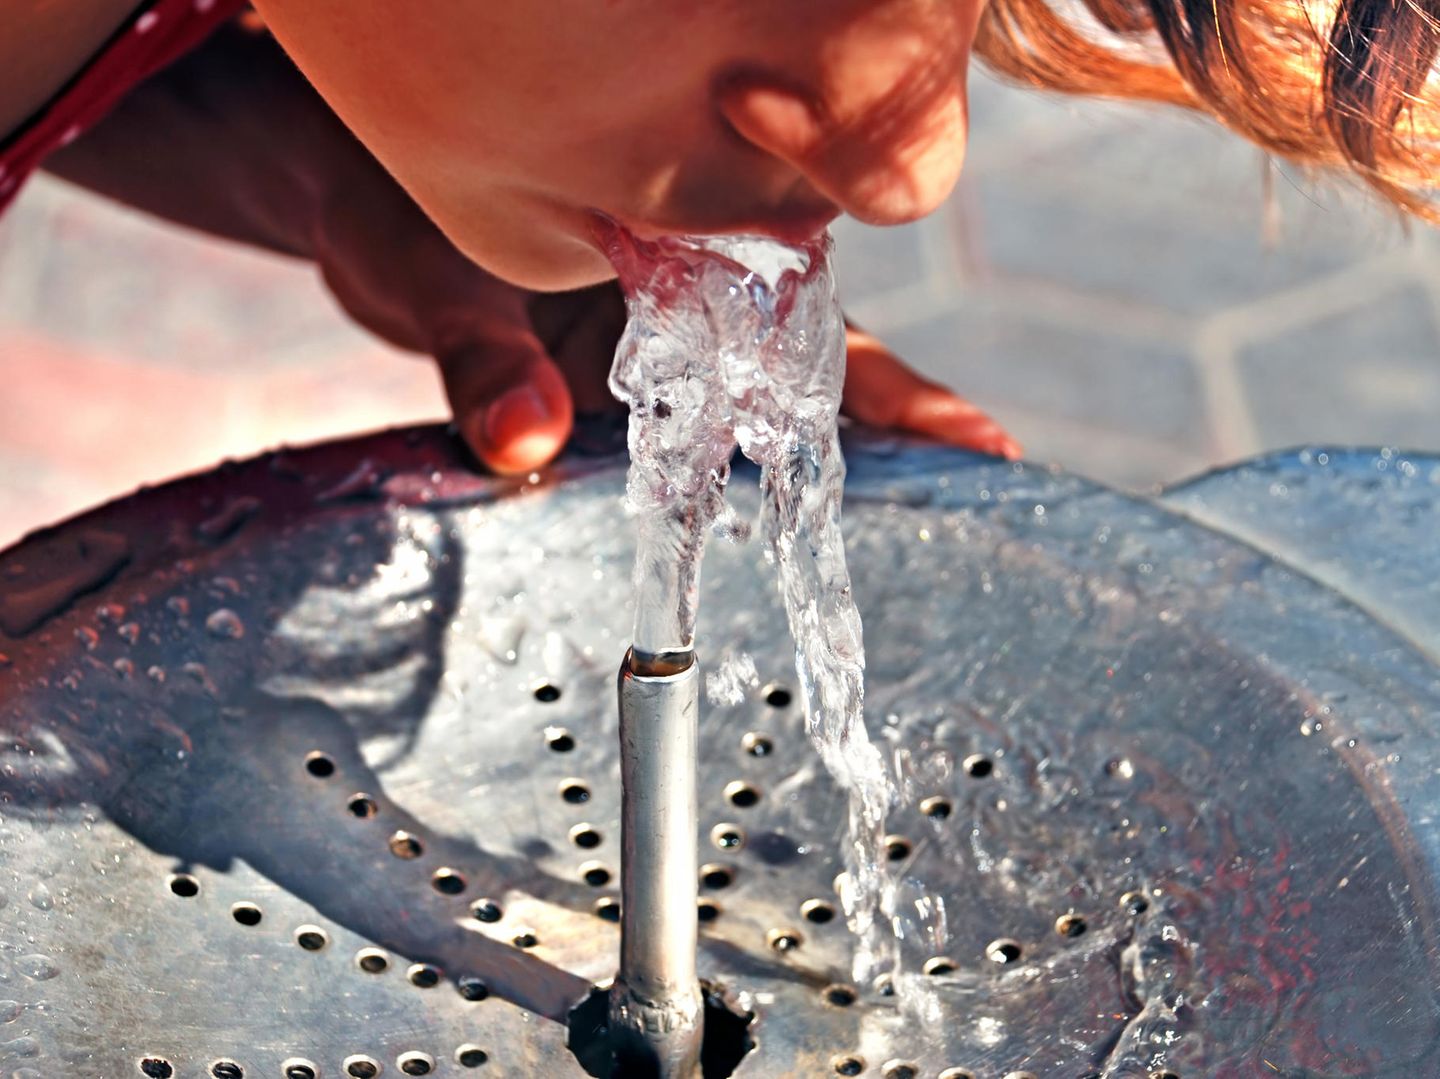 Droht München ein ernsthaftes Trinkwasserproblem?